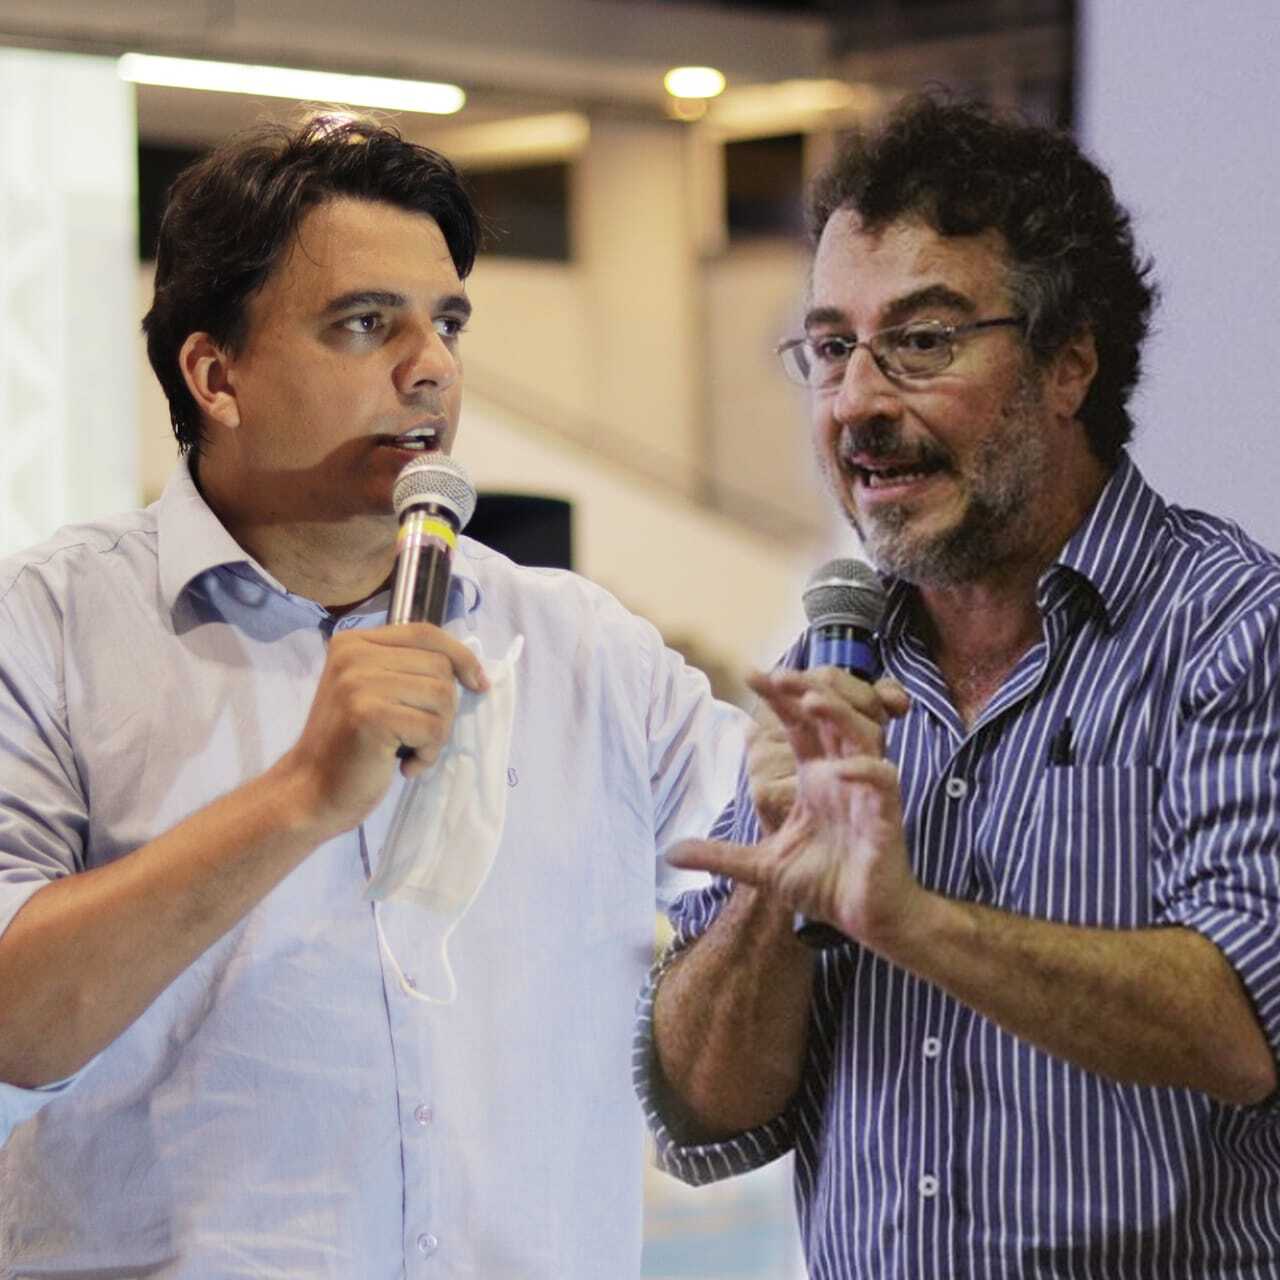 Jorge Melguizo, “o homem que transformou Medellin”, visitará bairros da Serra com Thiago Carreiro em busca de soluções